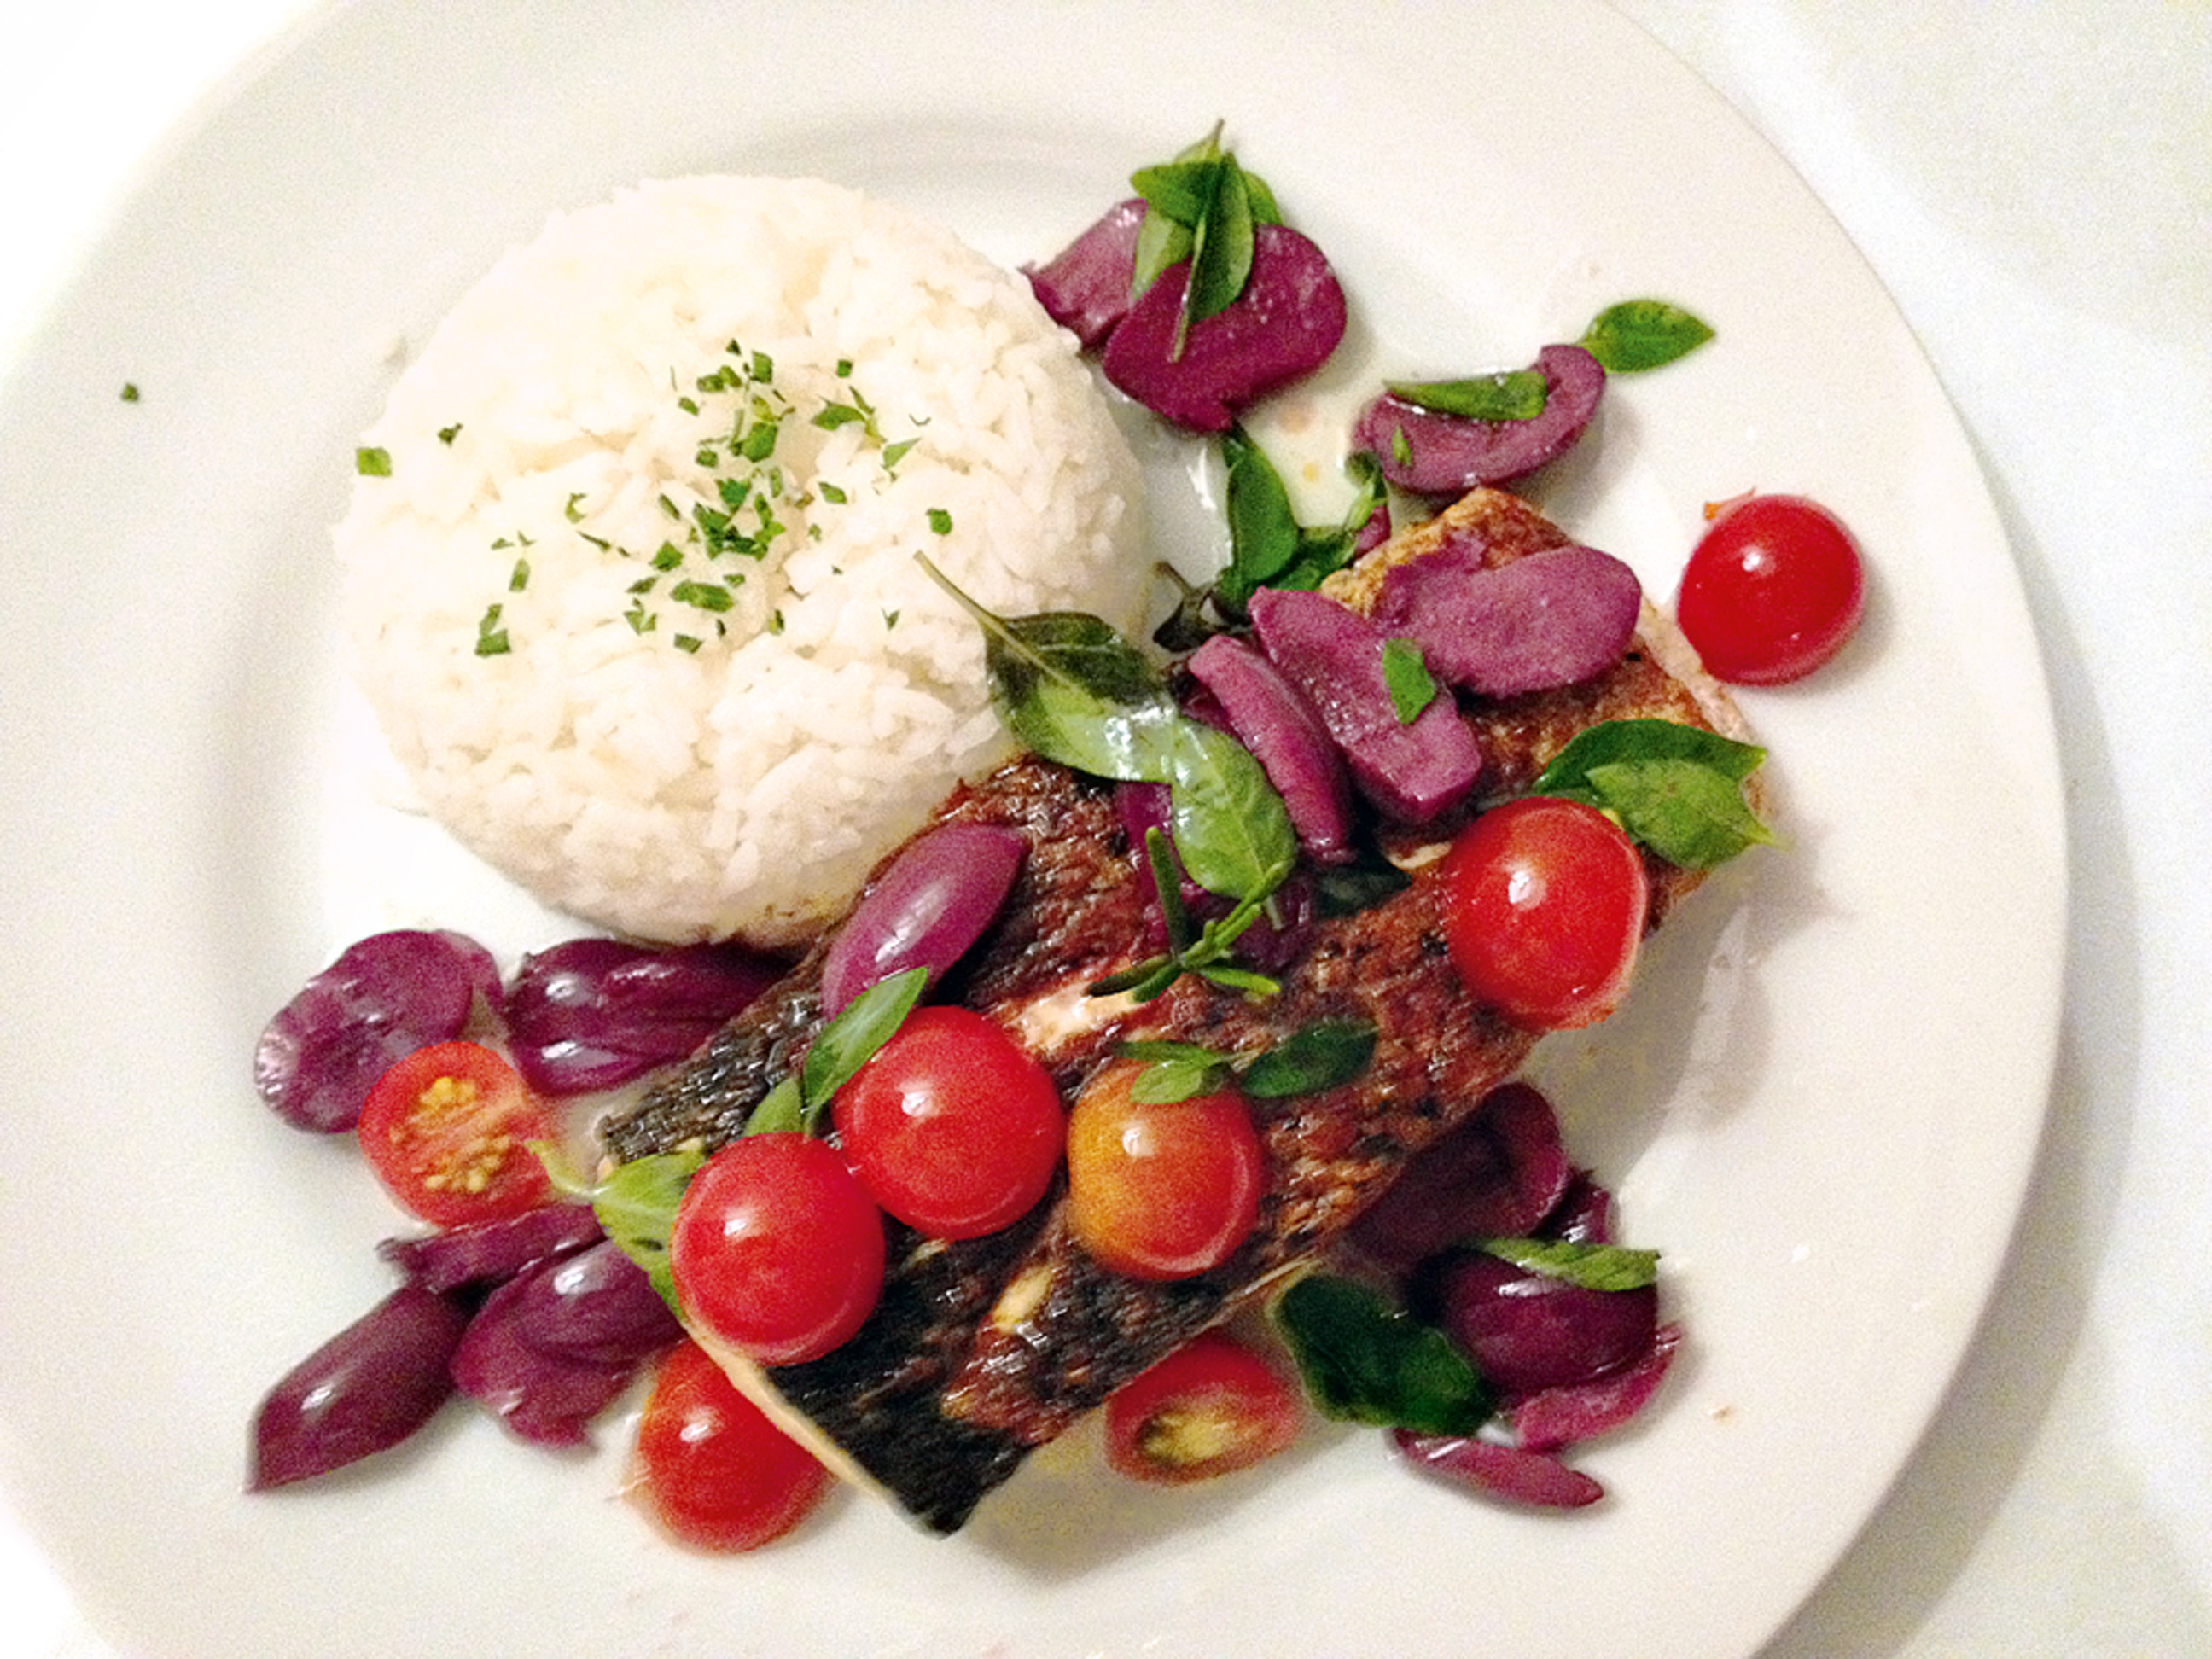 22:00 “Jantar no hotel depois de um dia cheio: salmão grelhado com azeitonas, tomate e arroz.